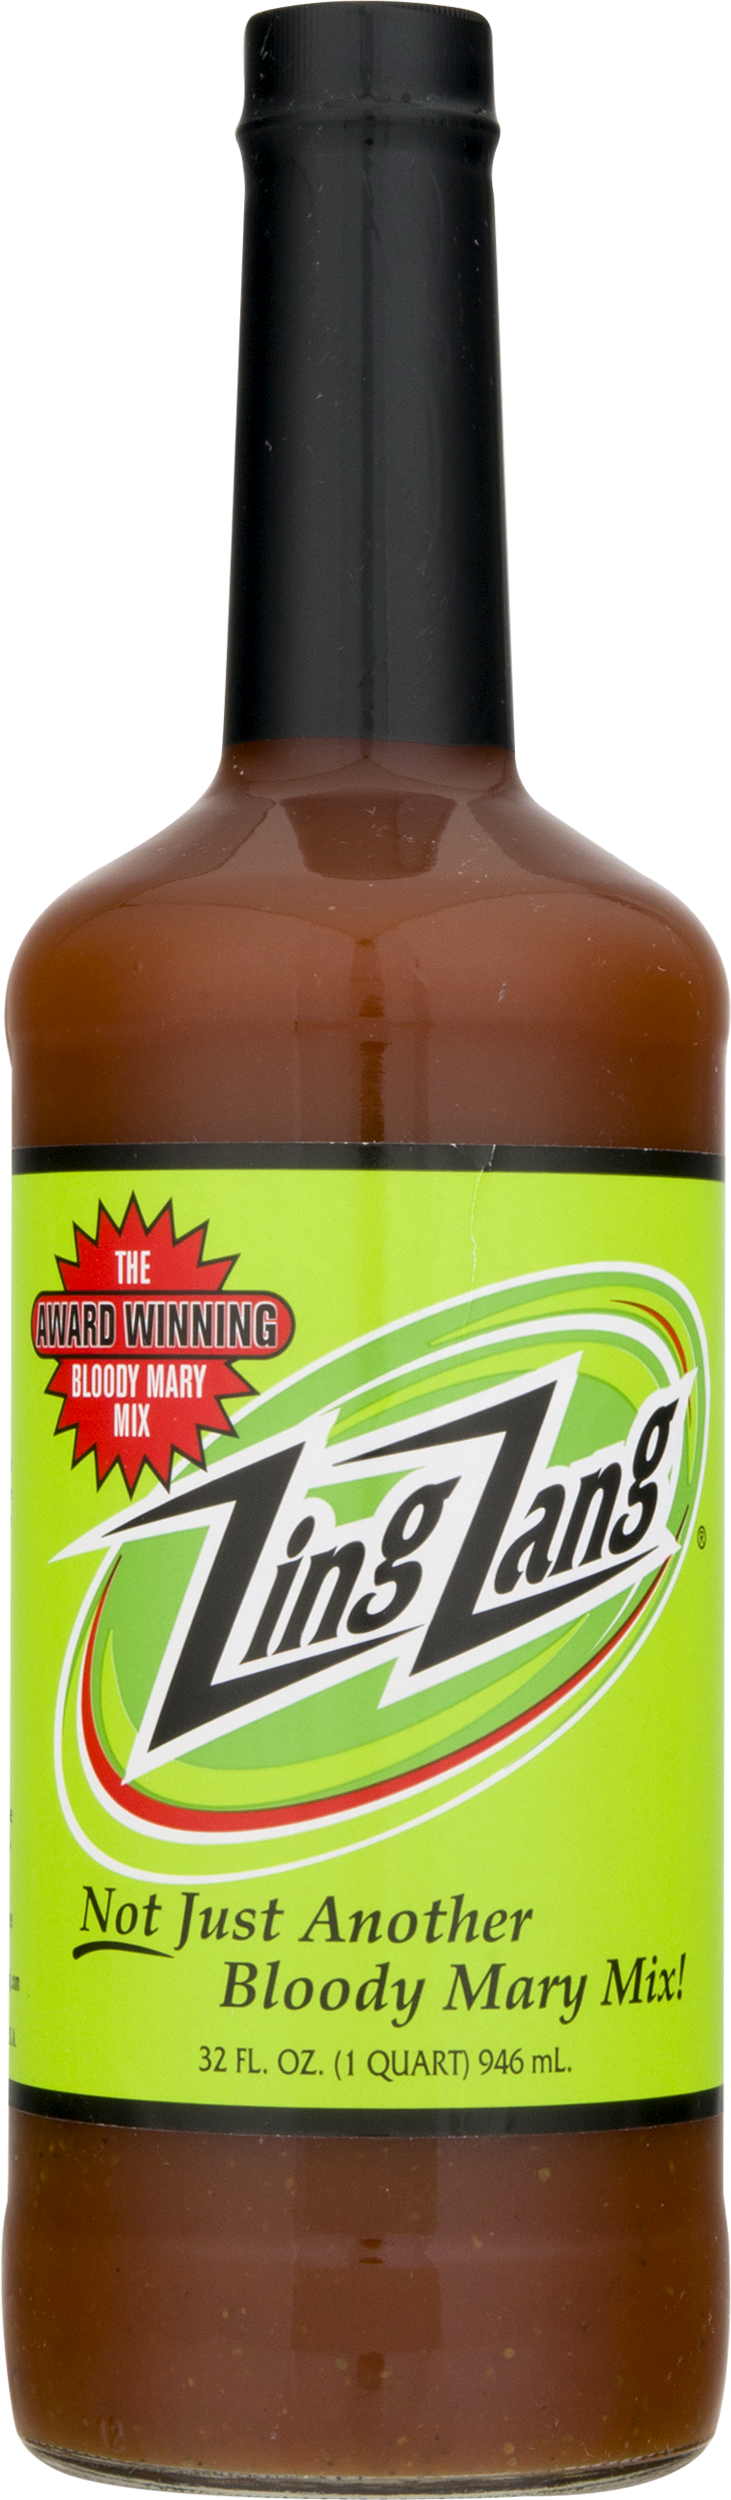 Zing Zang Bloody Mary Mix 32 fl. oz Bottle